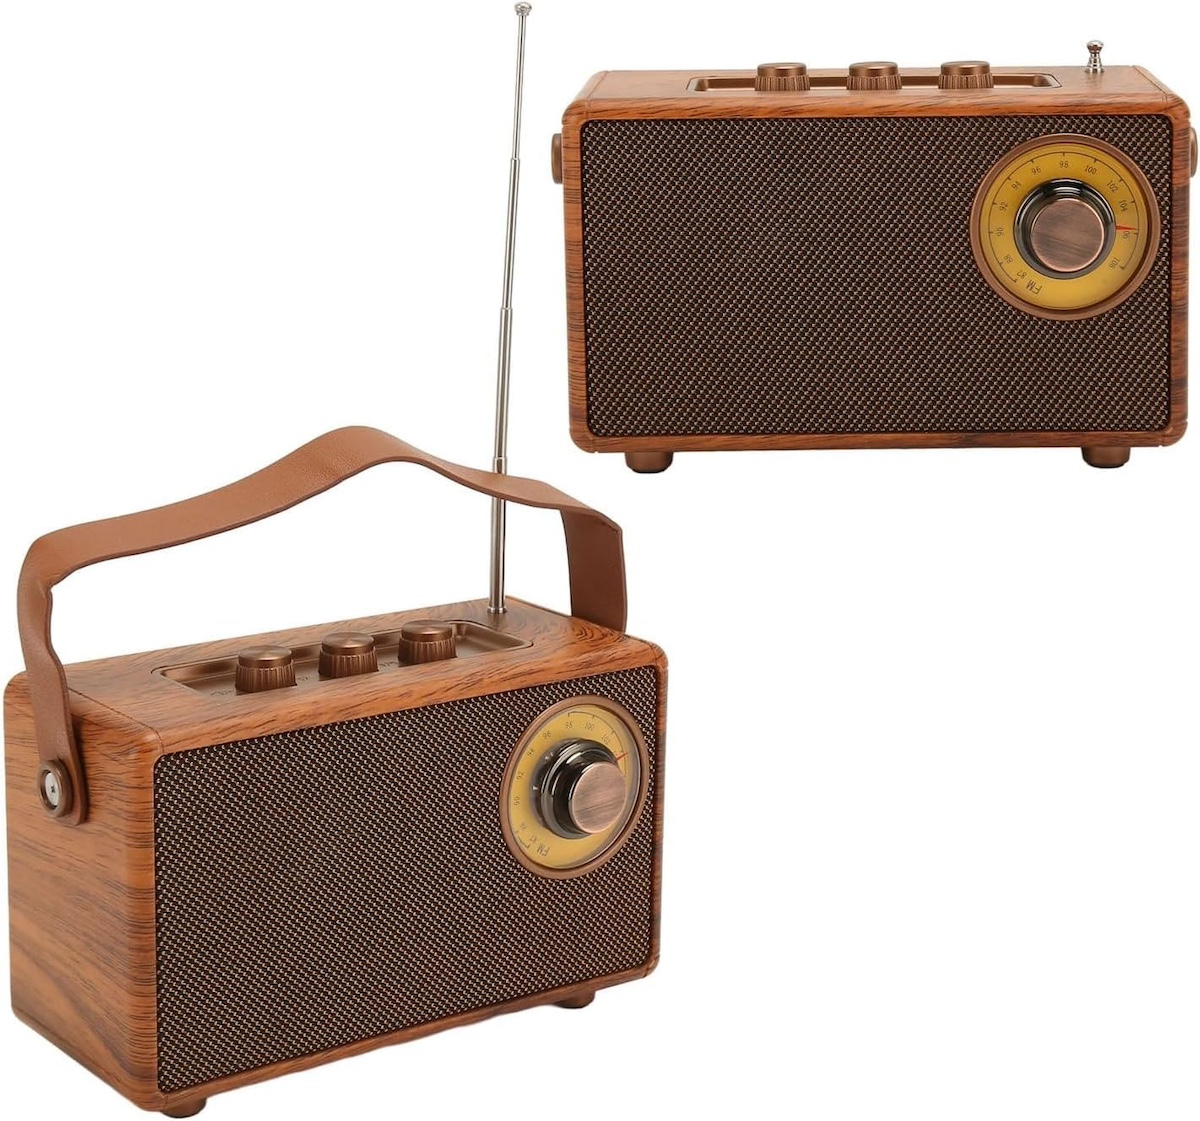 radijas mini mažas retro vintažinio medinio stiliaus